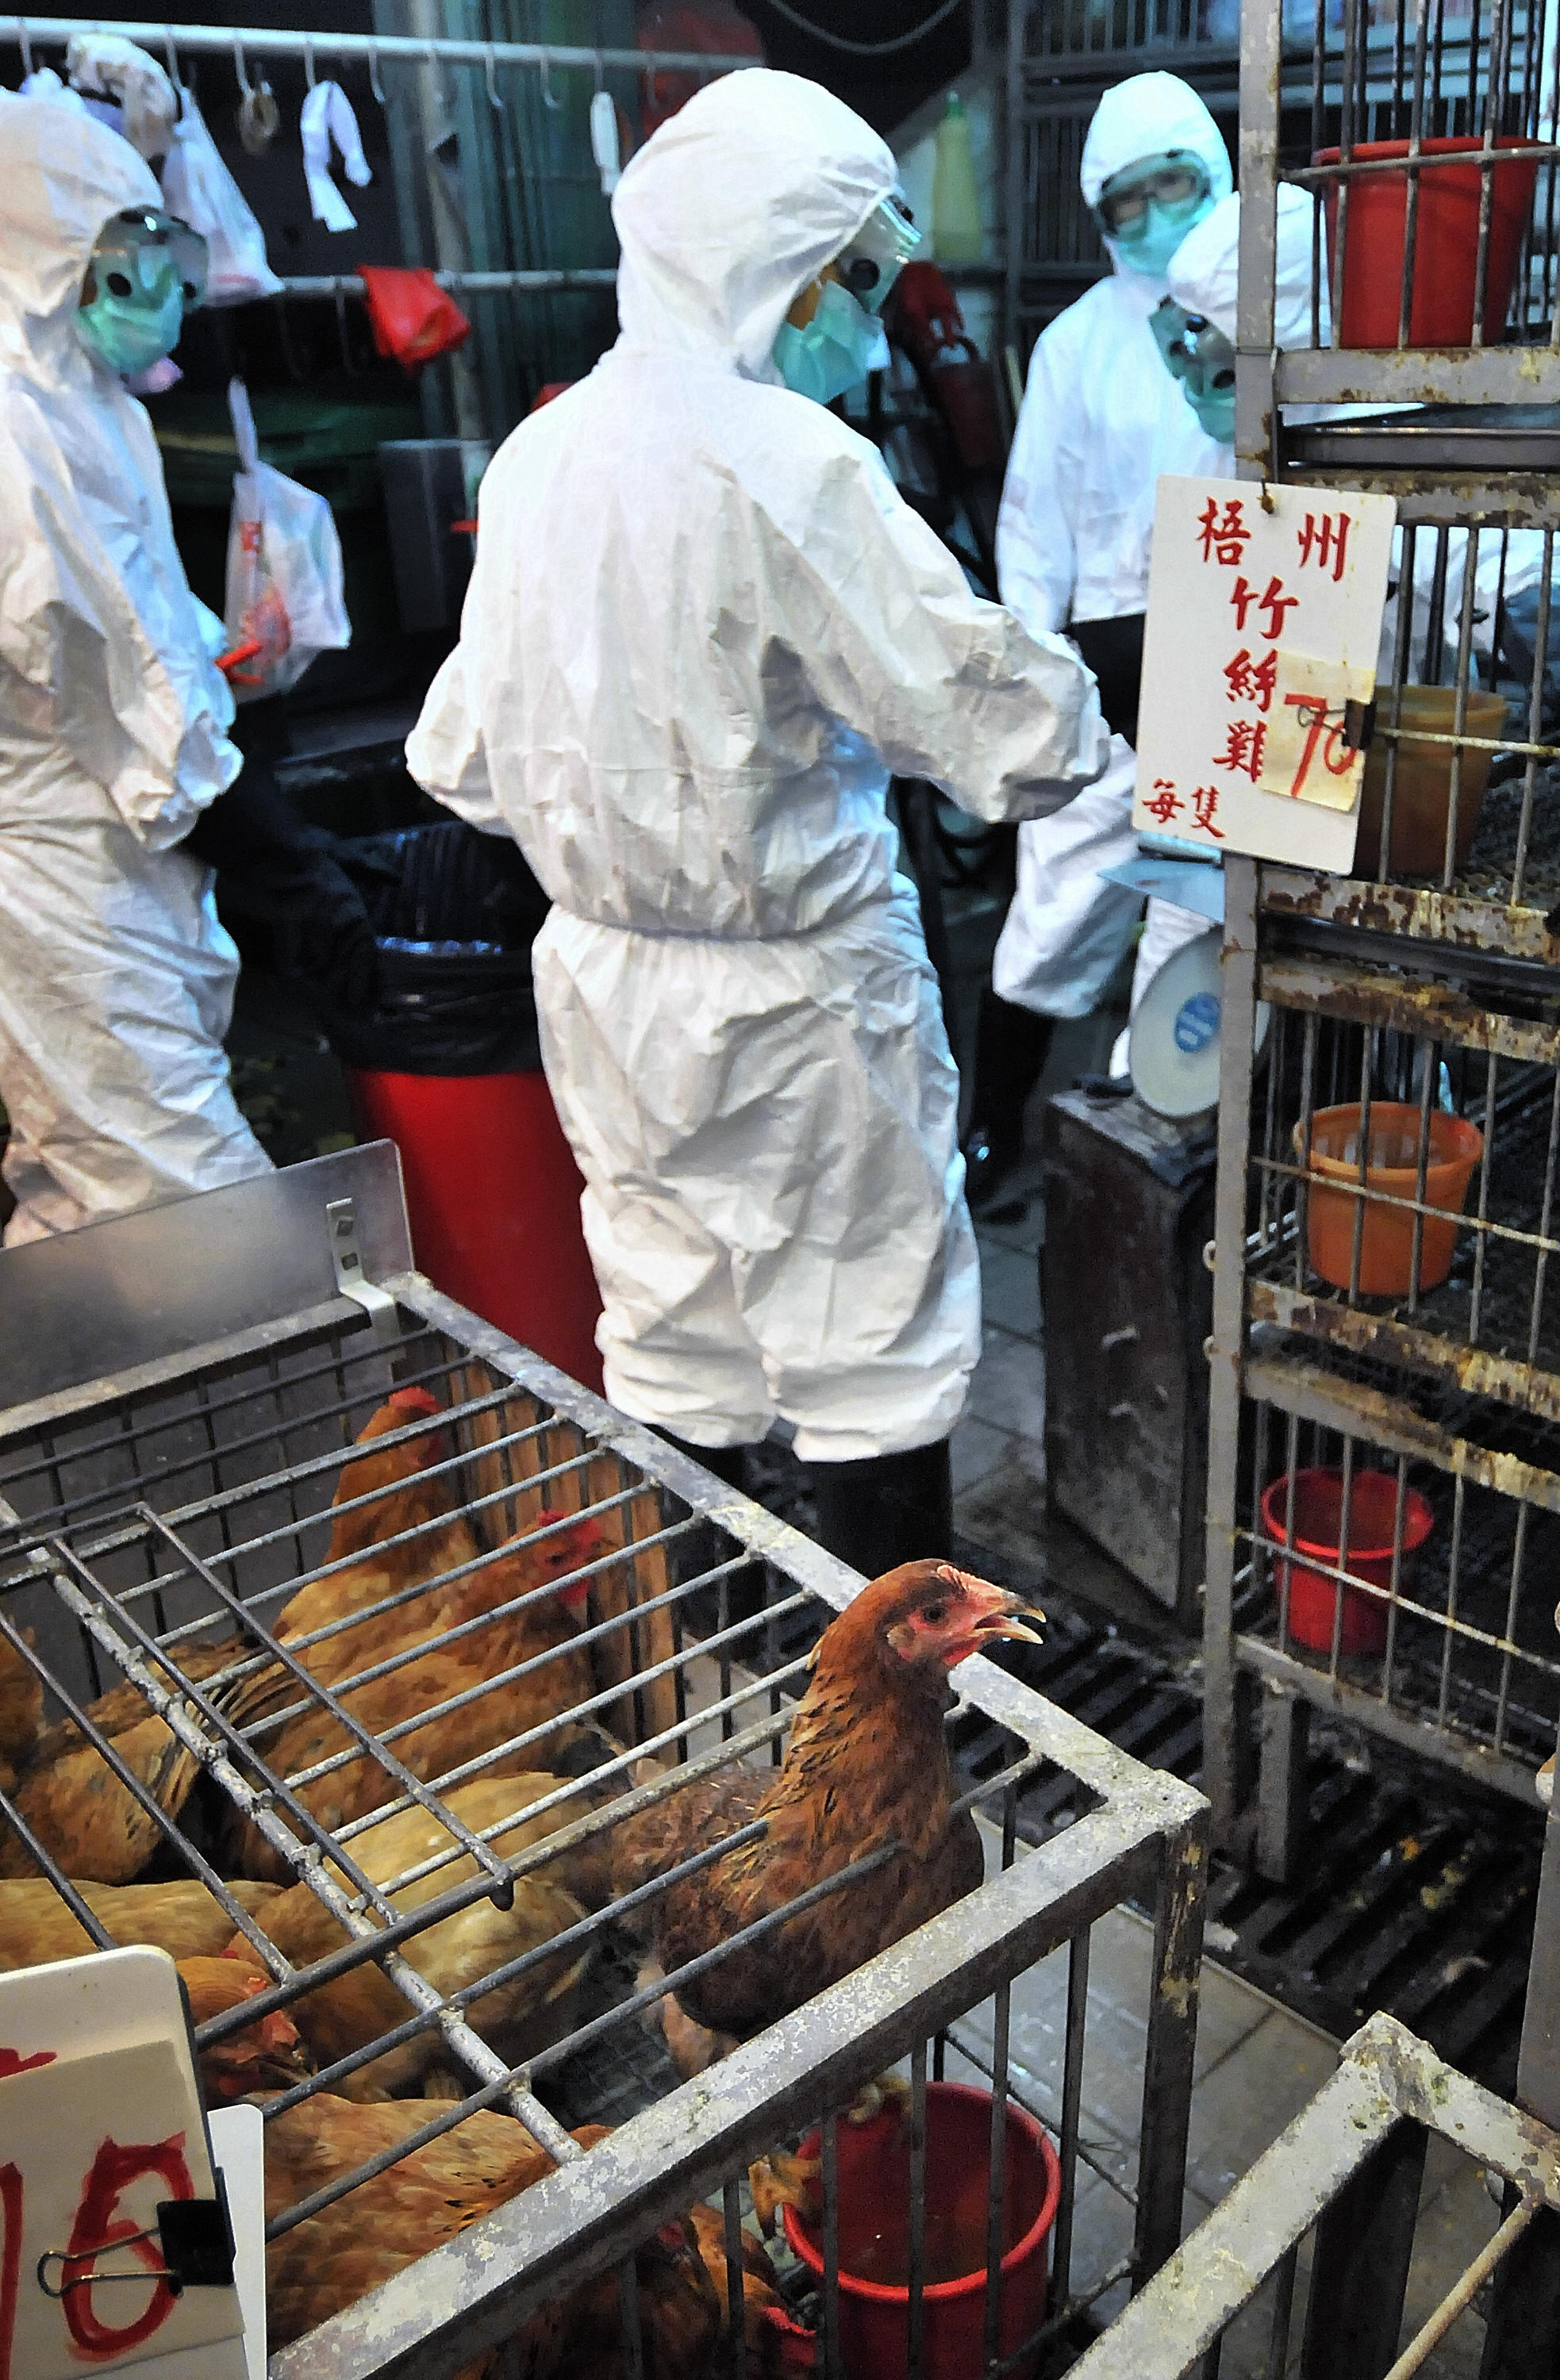 今年端午节前夕，香港食物及卫生局局长周一岳公布禽流感检疫报告，证实从街市抽取的5个鸡粪样本，带有H5N1禽流感病毒。